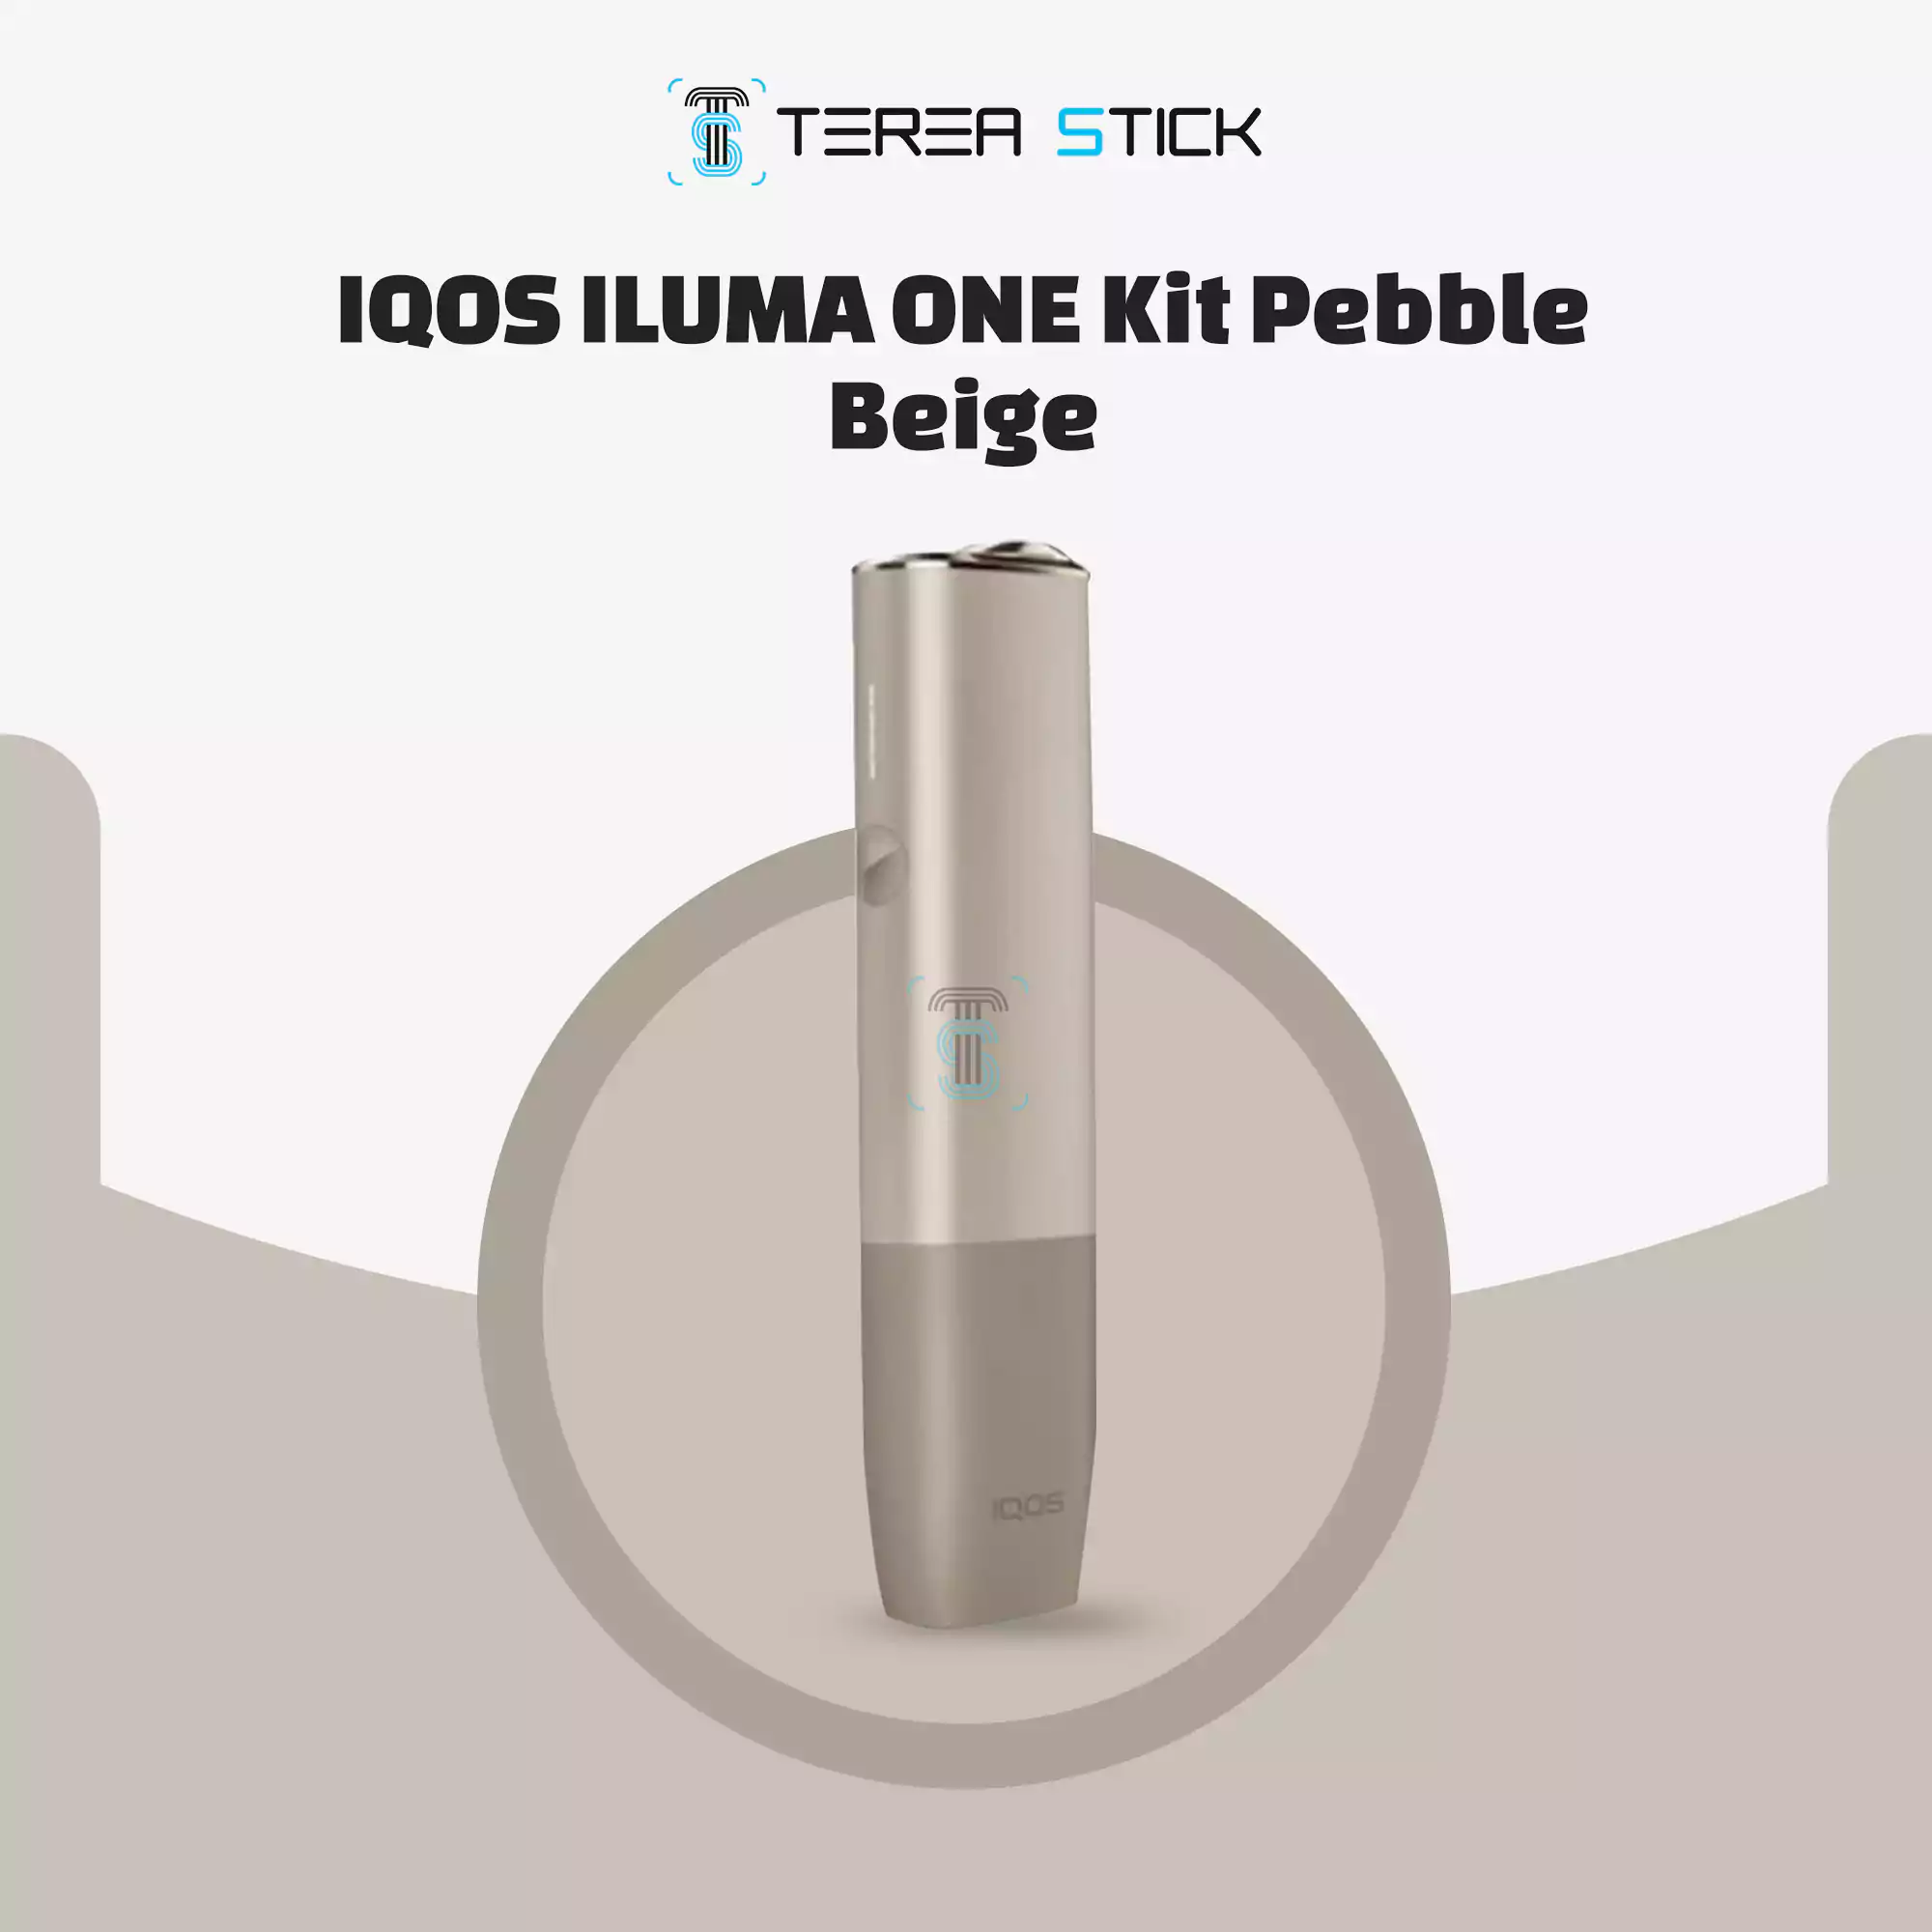 Iqos Iluma pebble beige kit